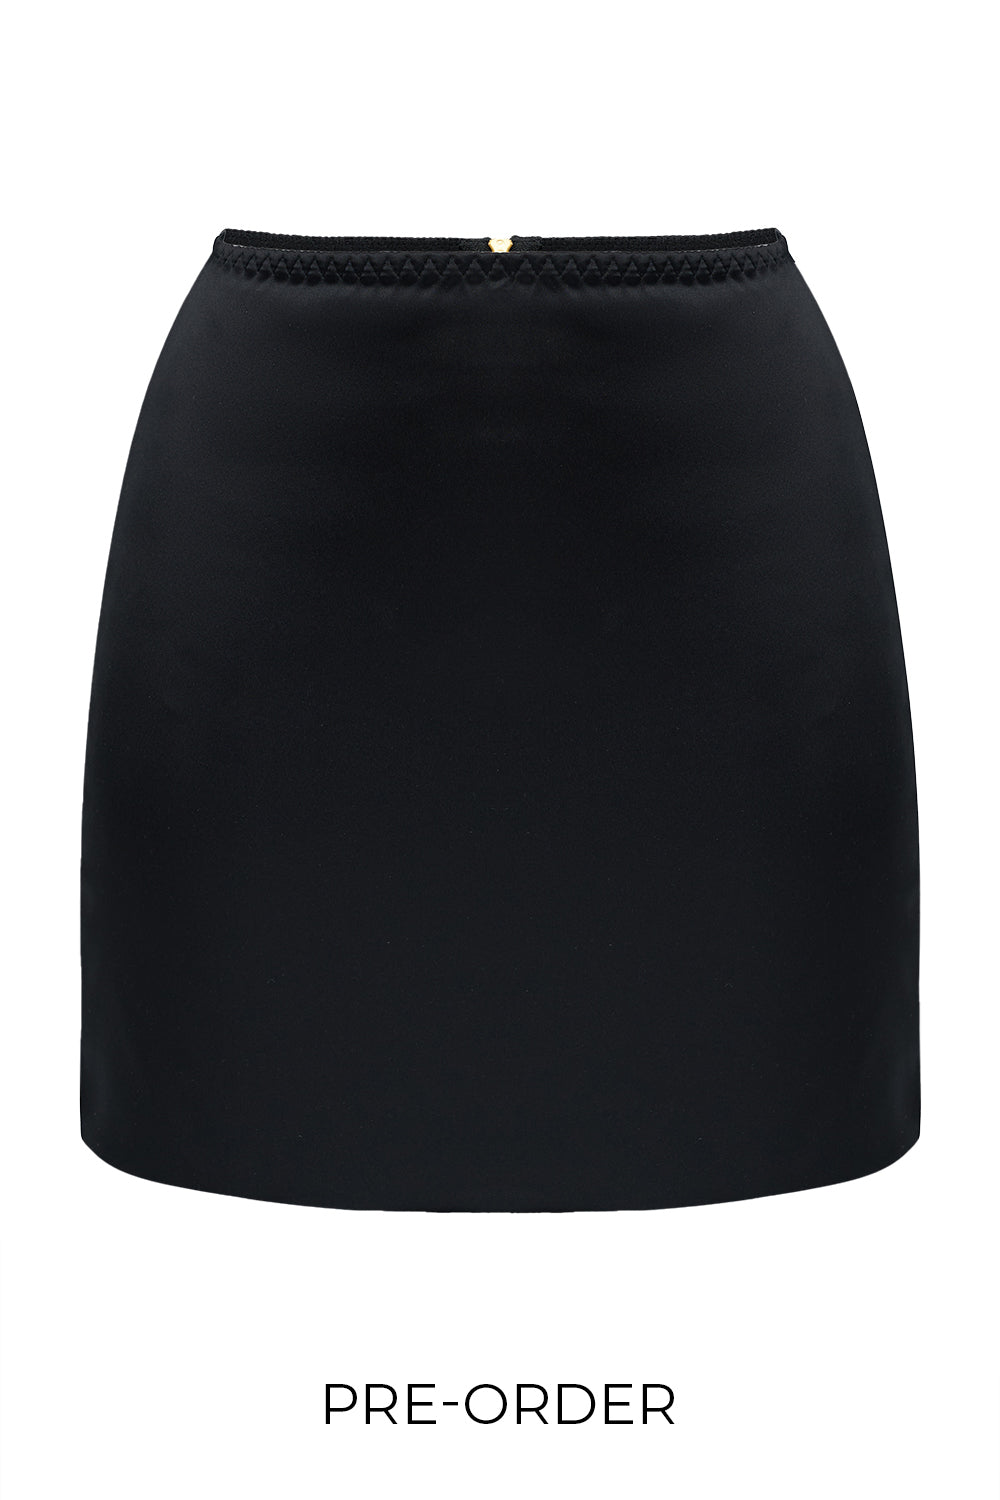 Leria Black skirt